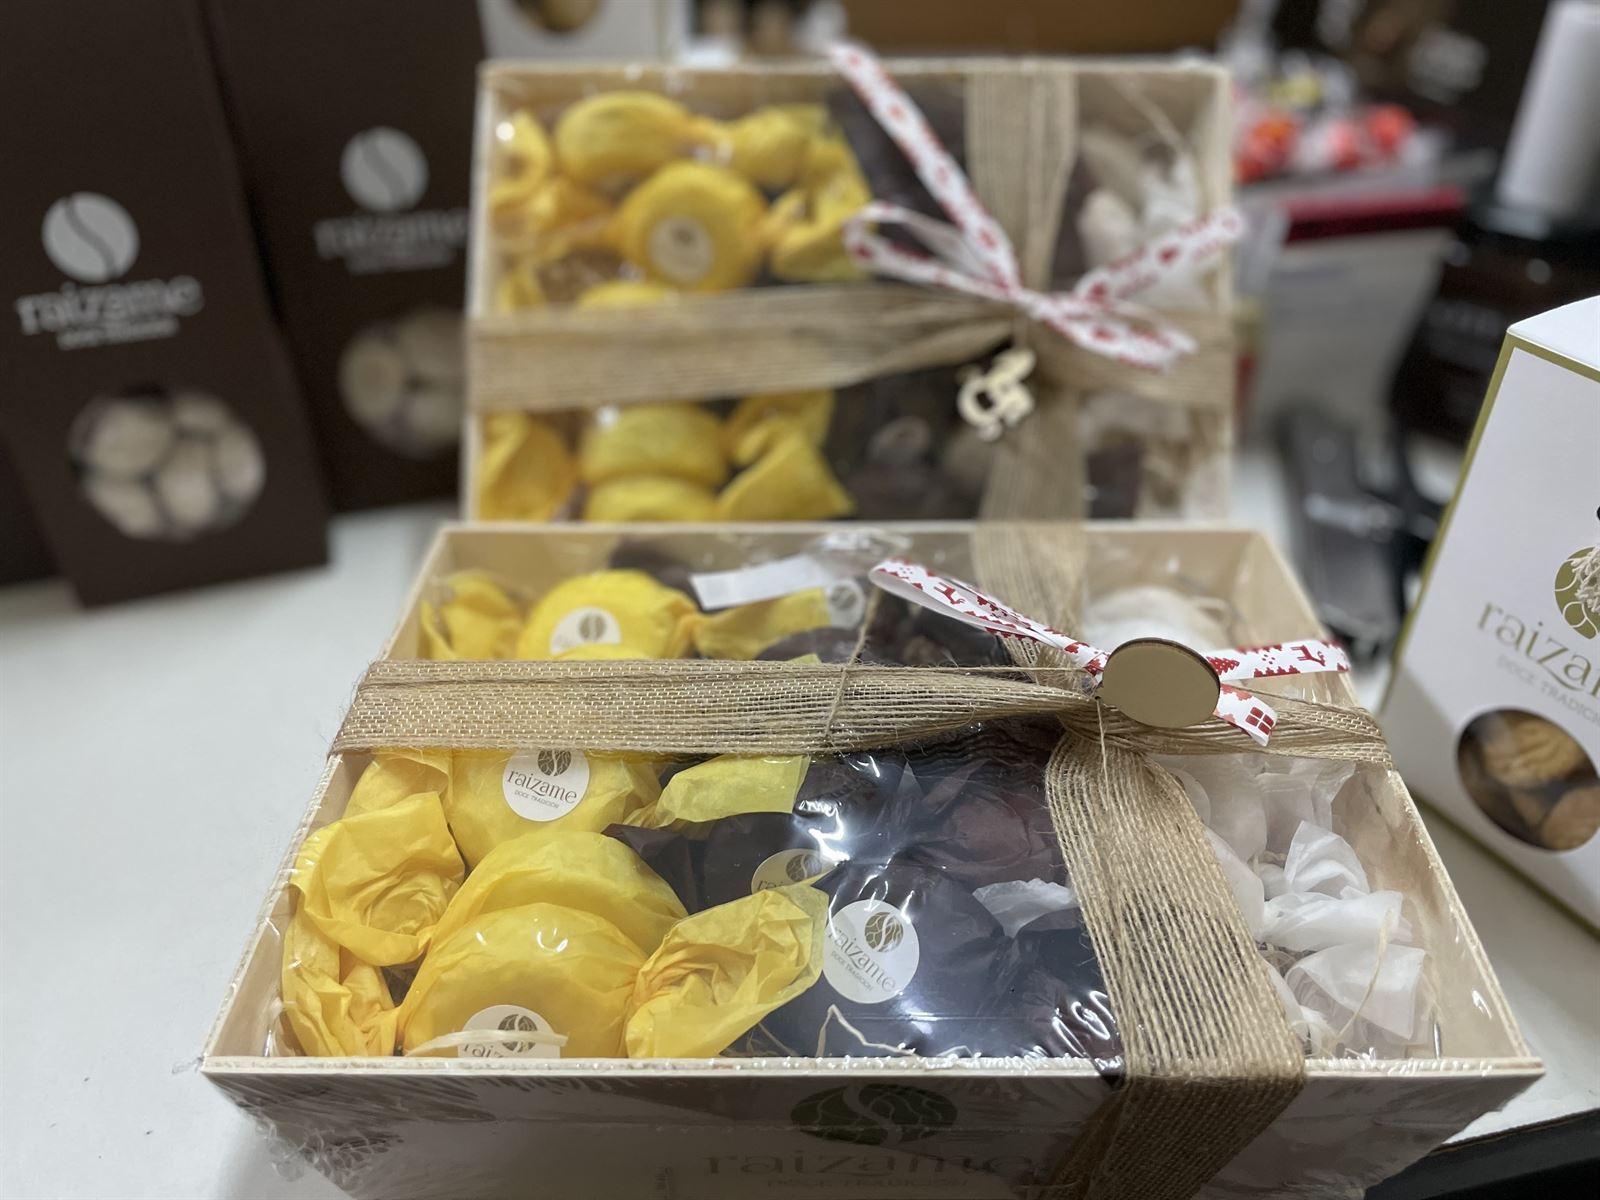 Cajas de Polvorones Raizame Tres Sabores: Limón, Chocolate y Almendra 350grs - Imagen 3